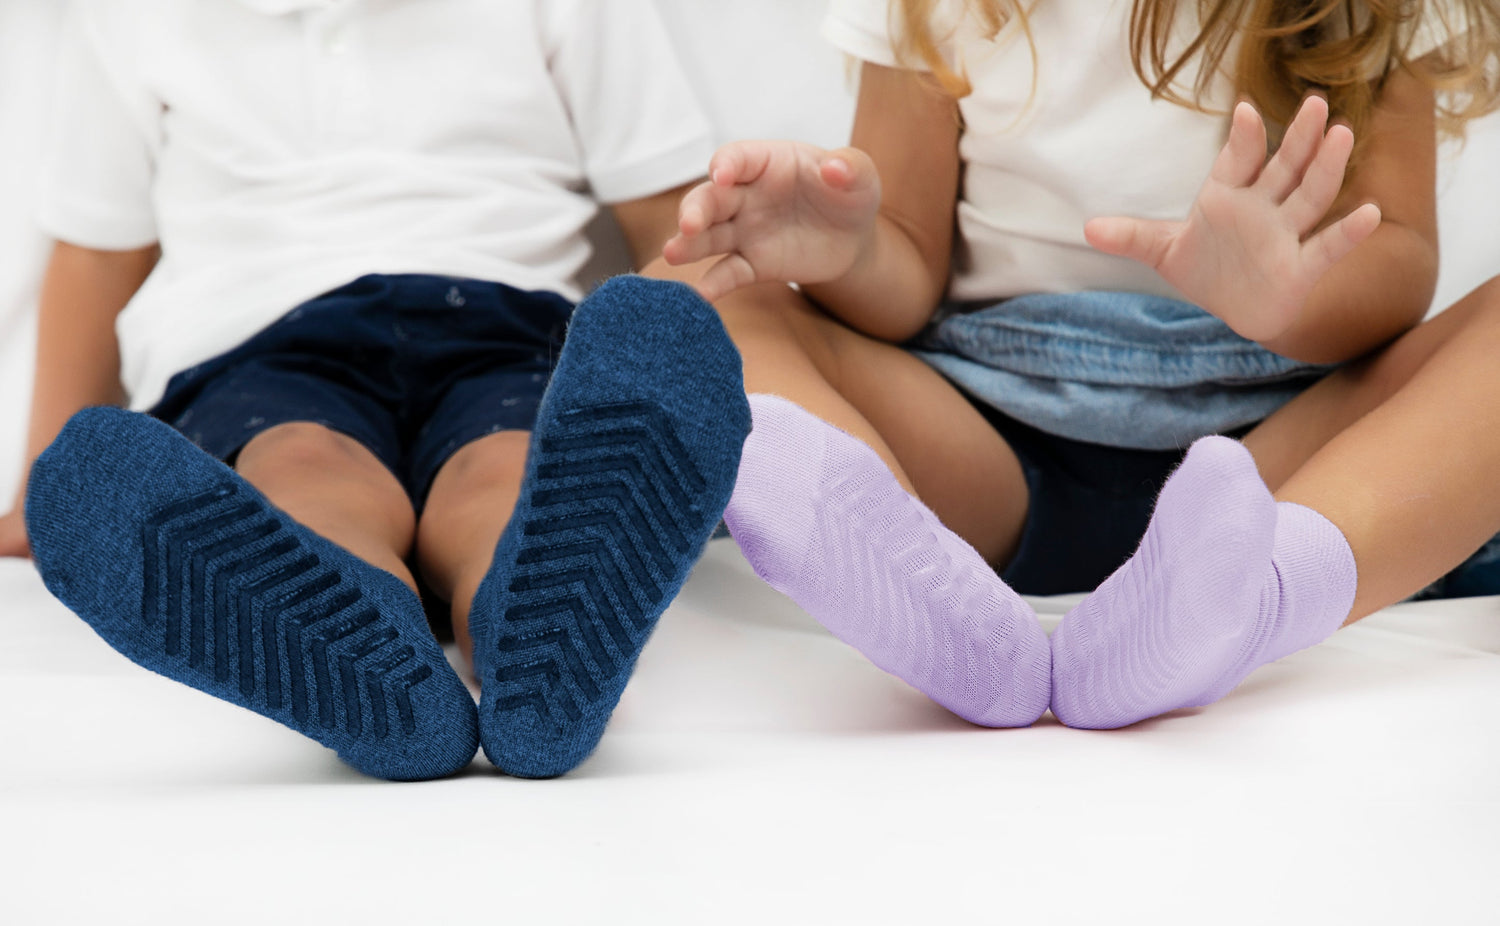 Black Grip Socks for Toddlers & Kids - 4 pairs - Gripjoy Socks